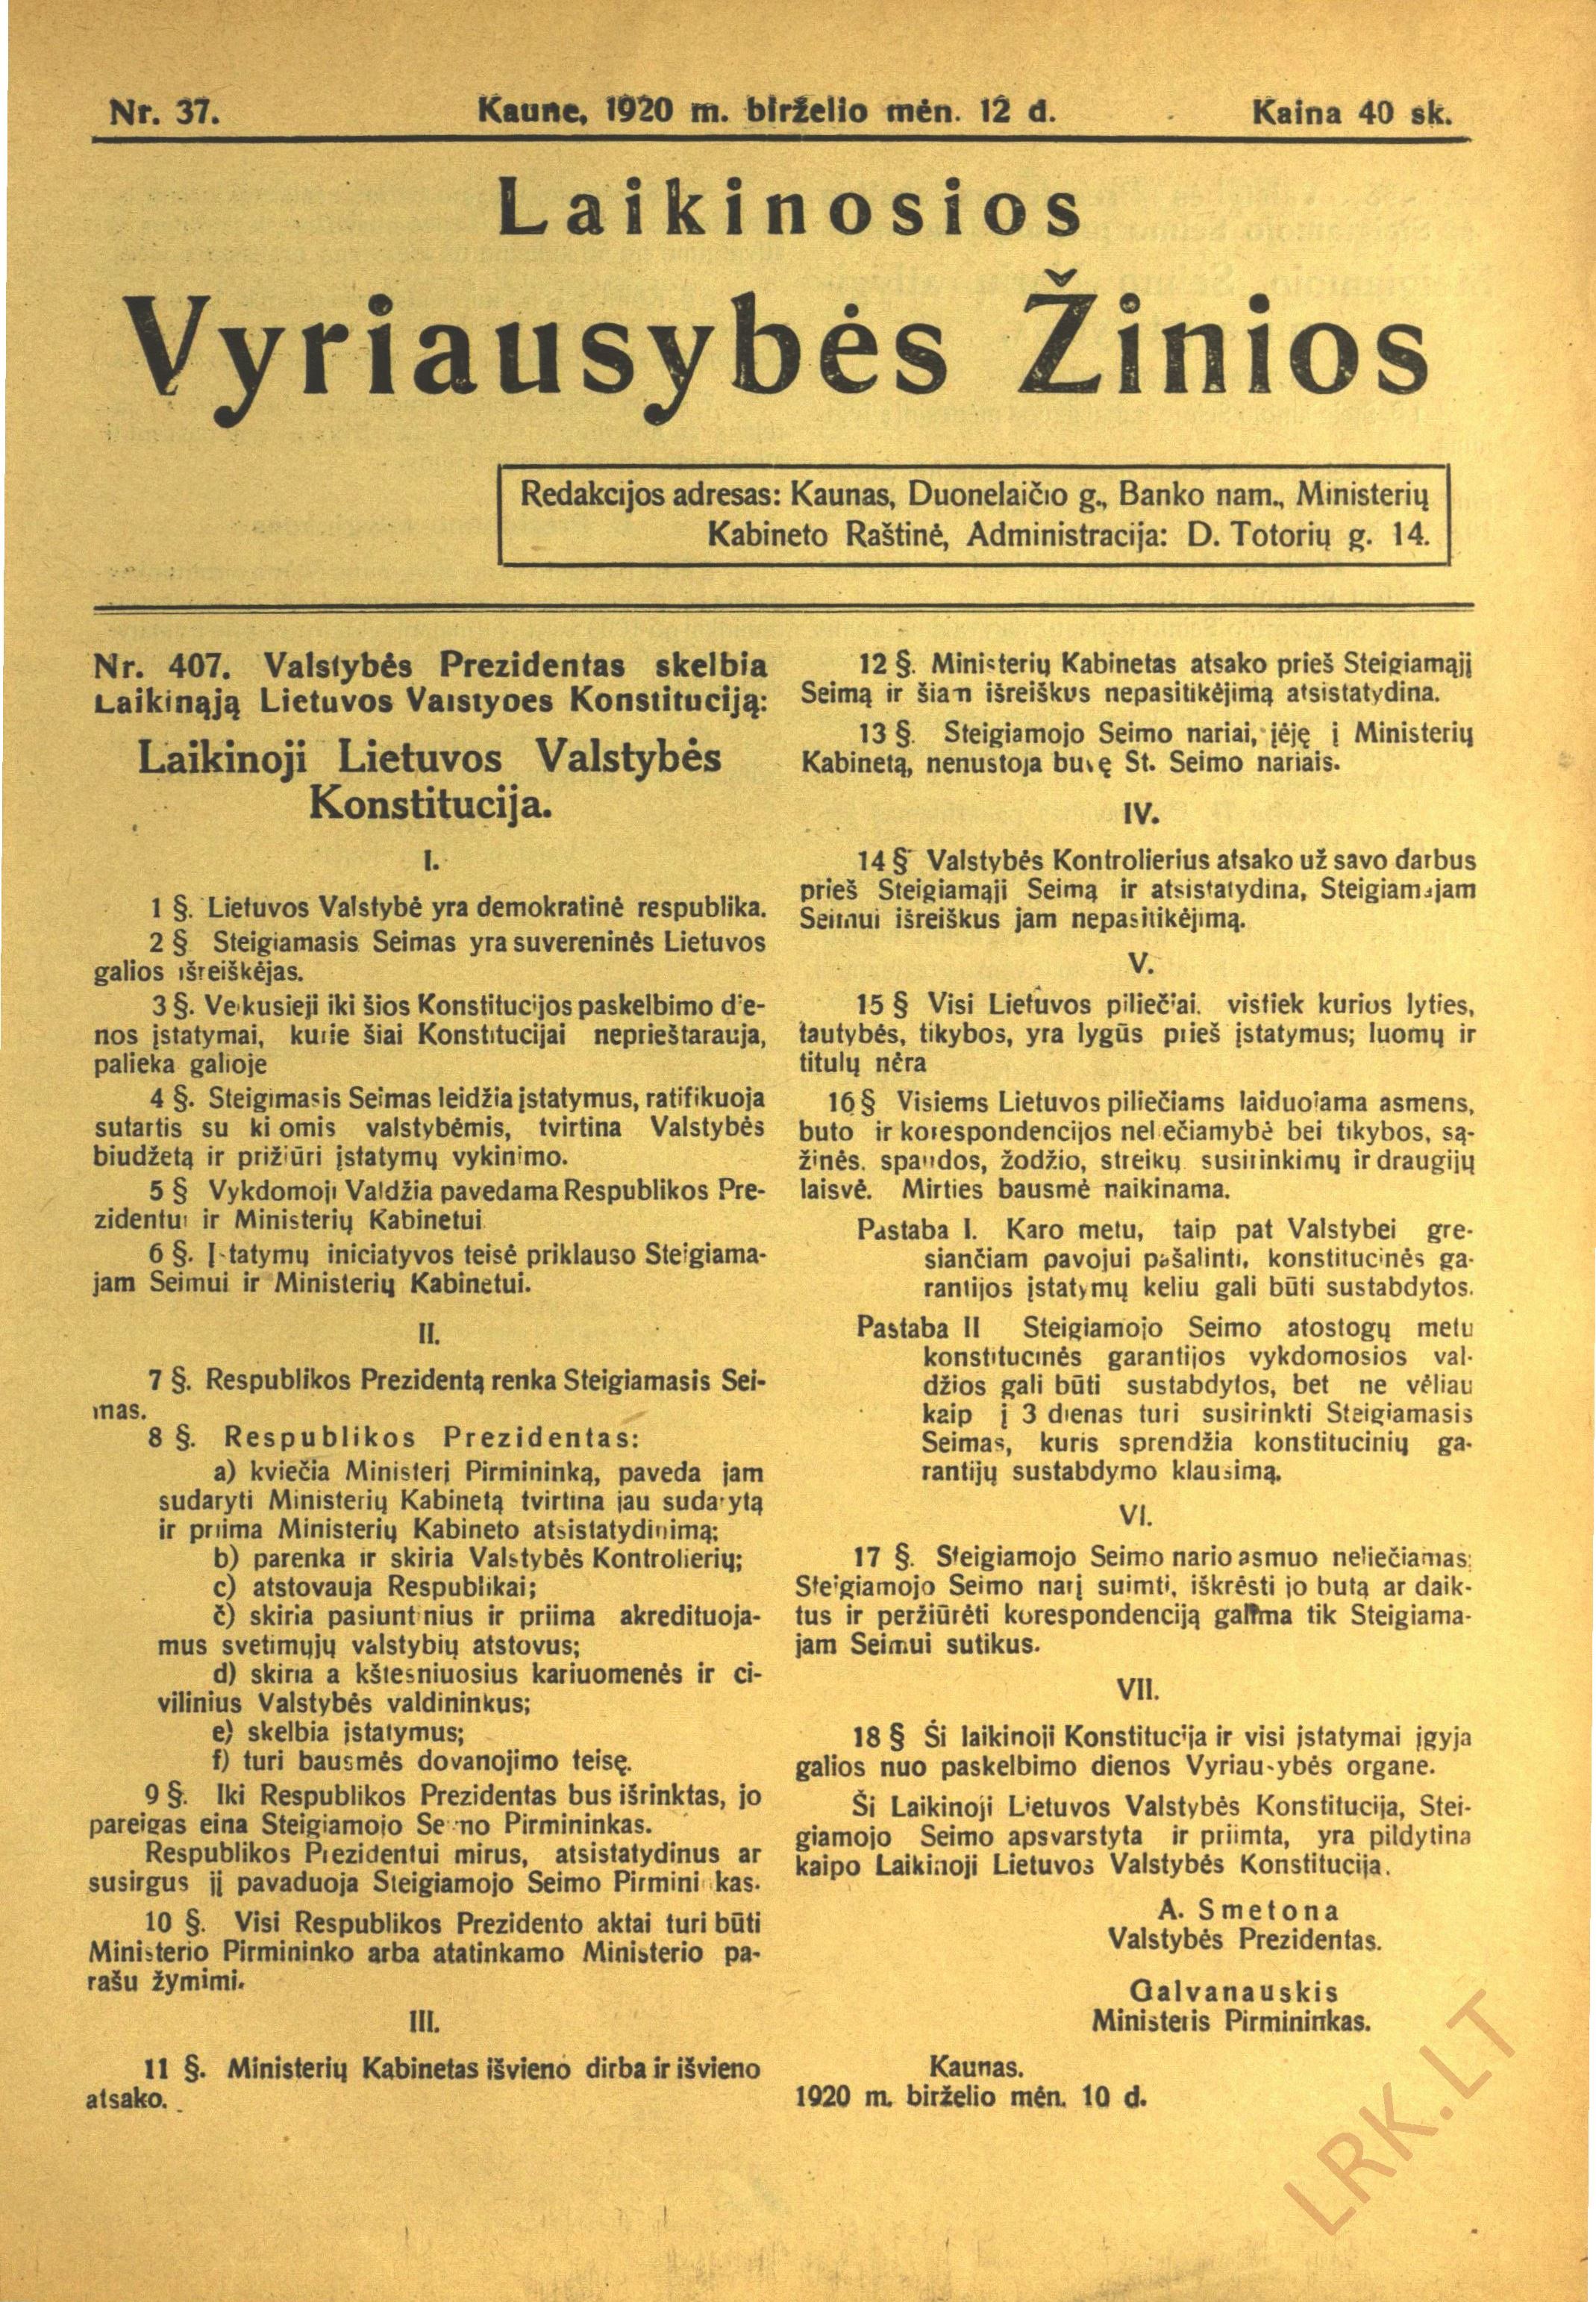 1920 m. laikinoji Lietuvos Valstybės Konstitucija